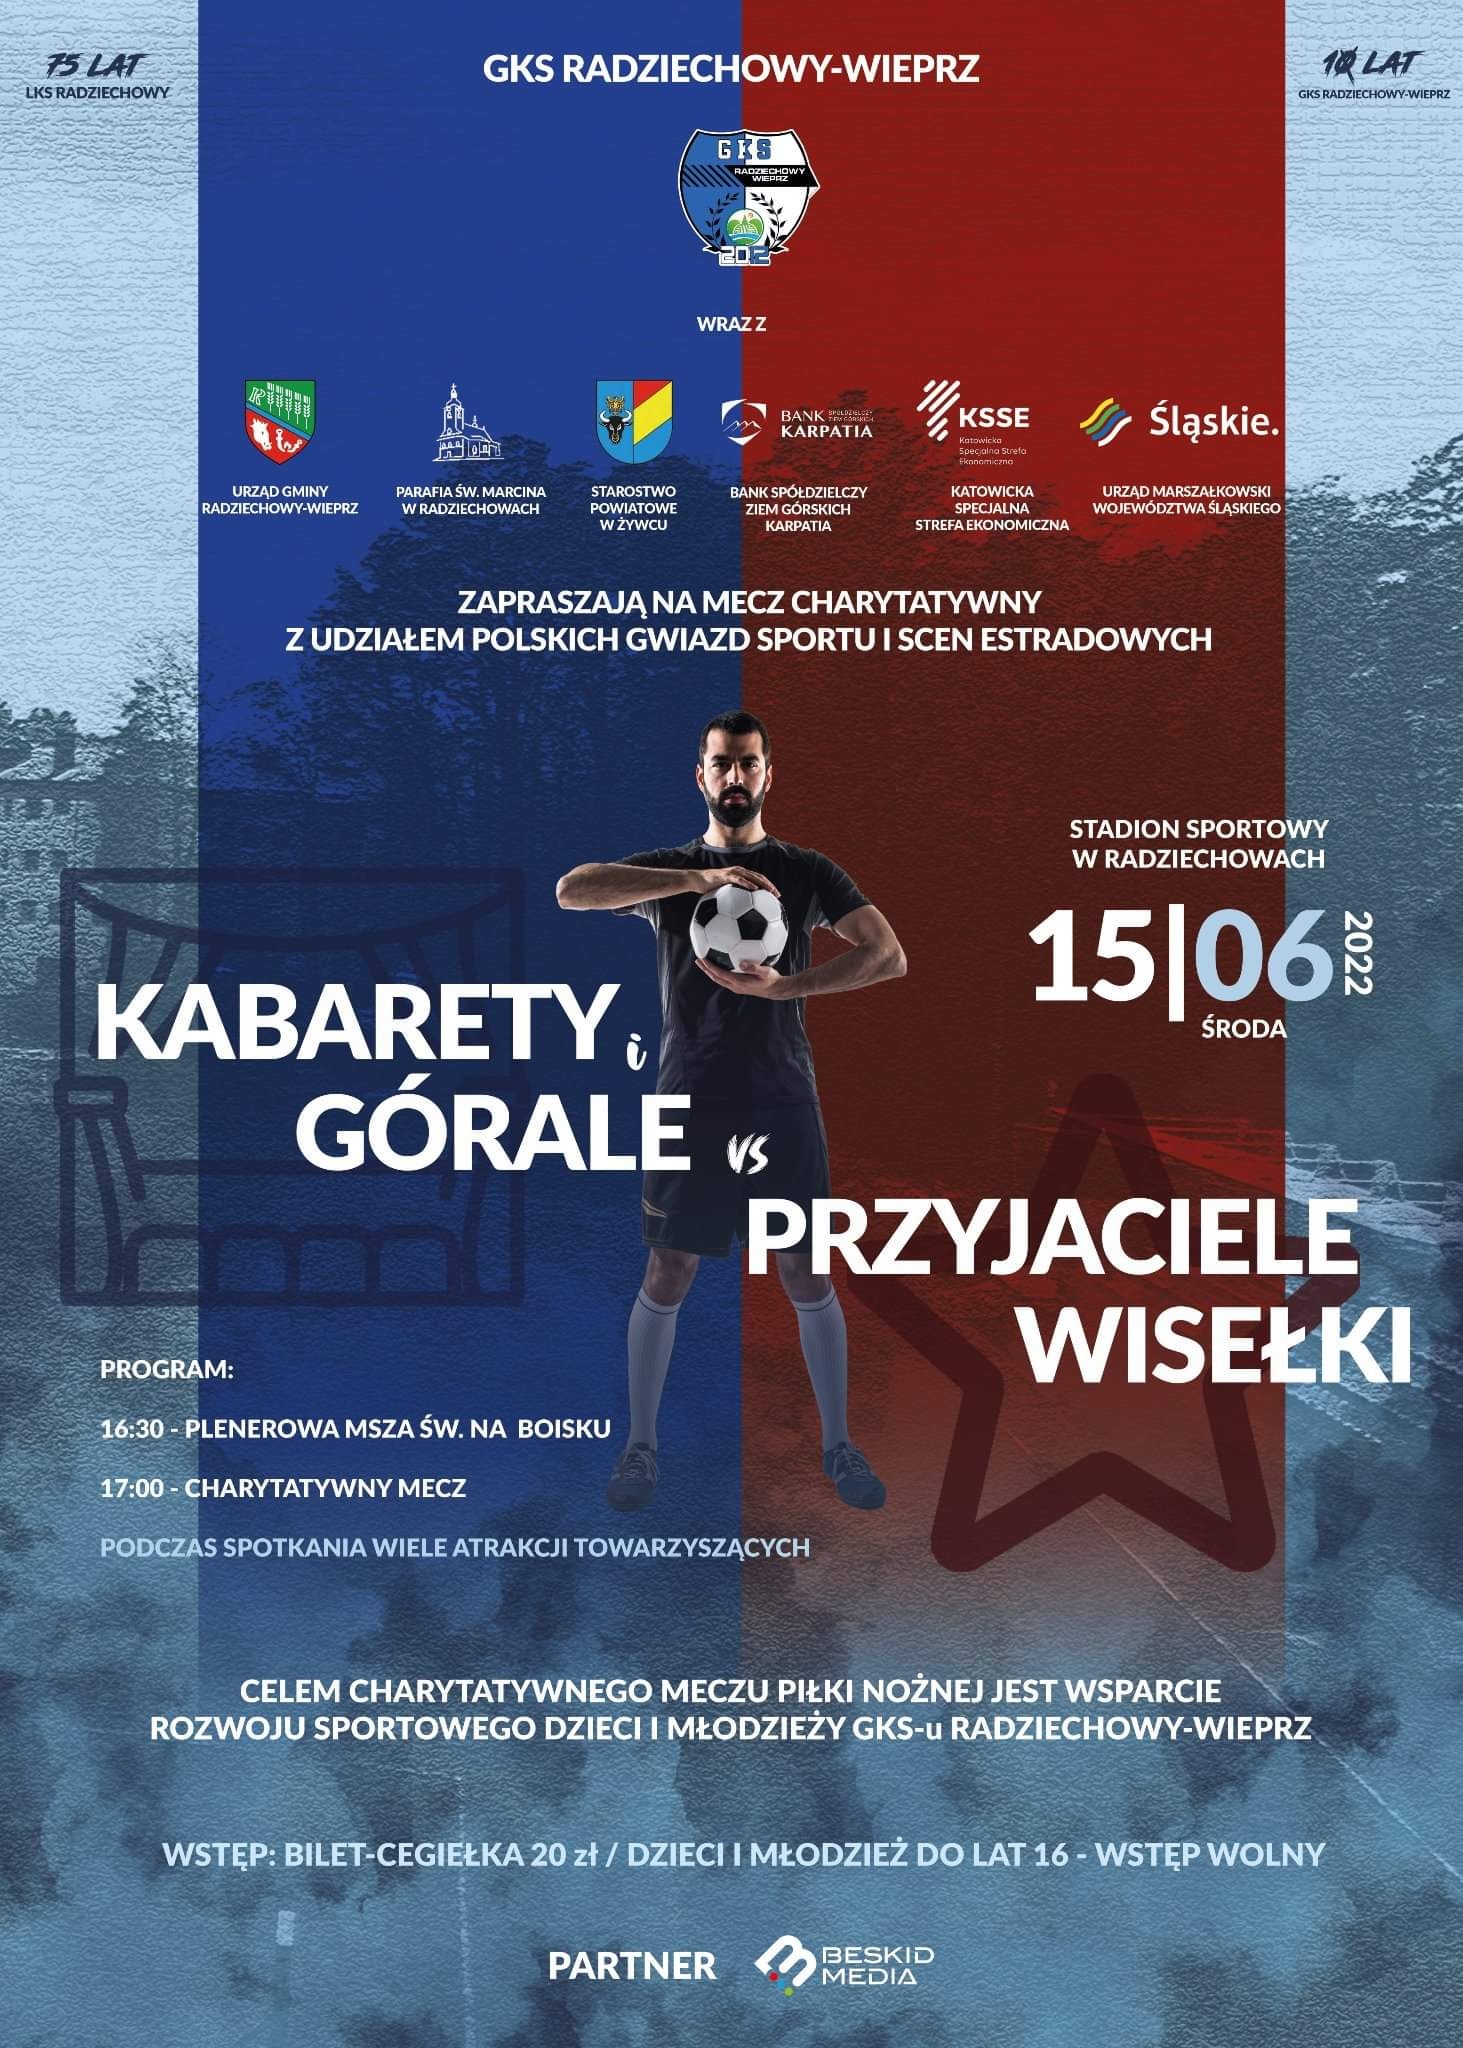 Zapraszamy na stadion GKS Radziechowy-Wieprz, gdzie odbędzie się mecz charytatywny z udziałem gwiazd...